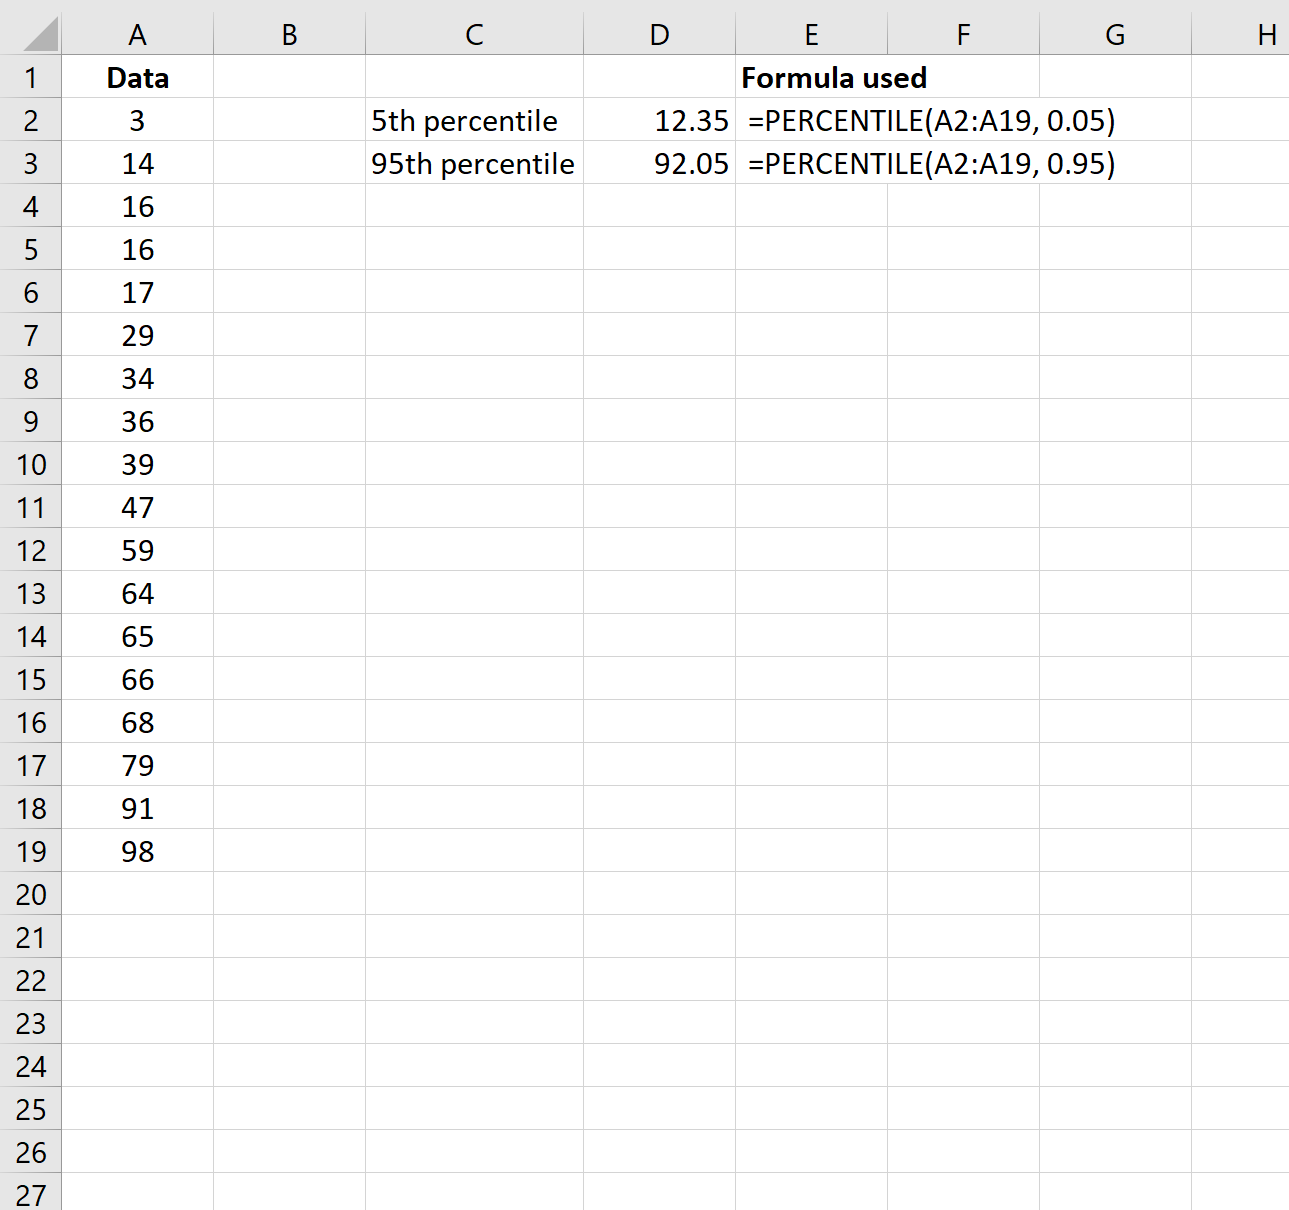 Contoh winorisasi data di Excel